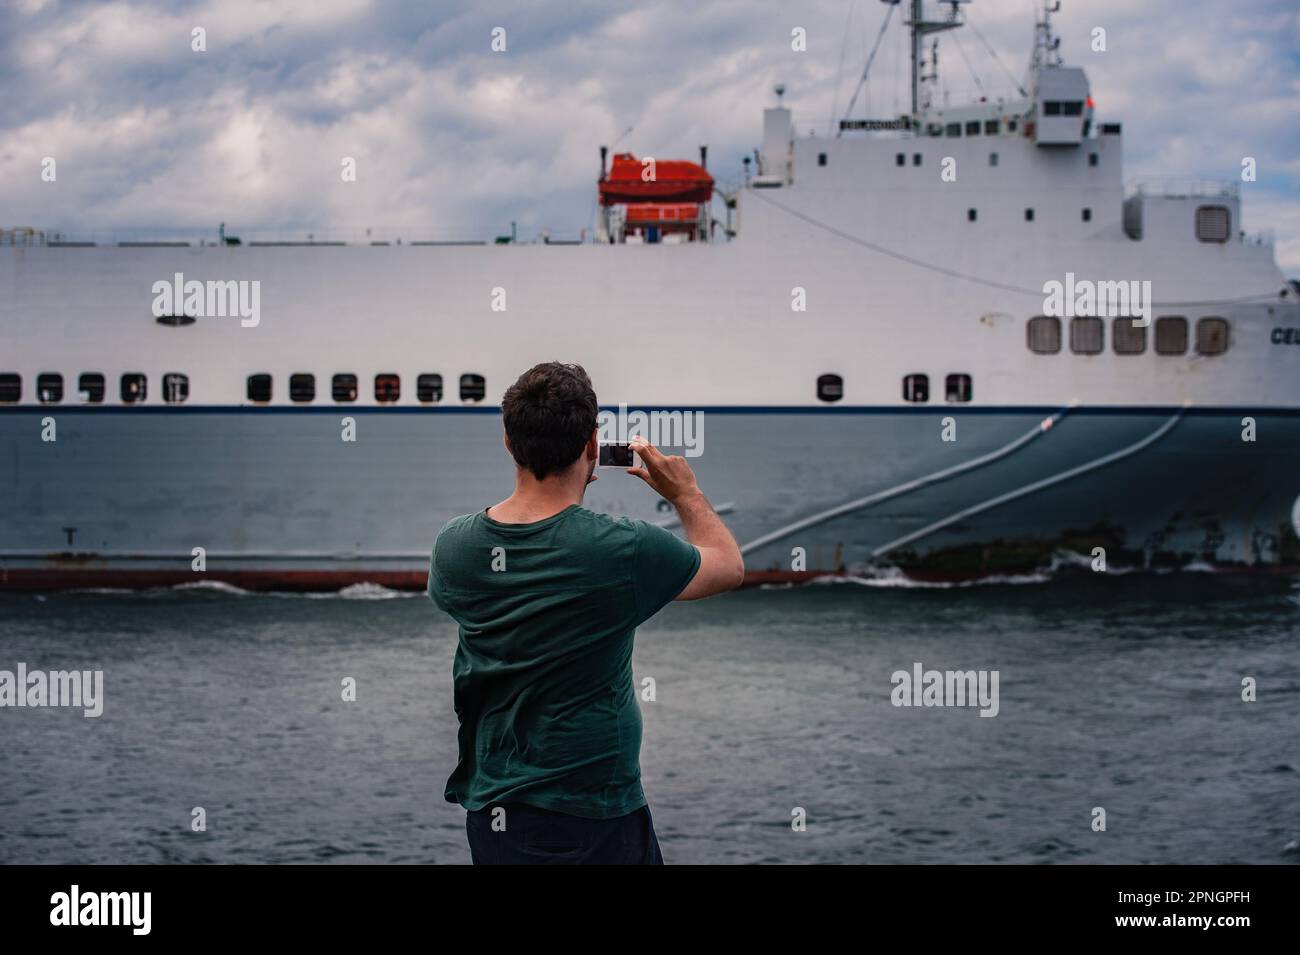 Vue arrière d'une personne qui prend une photo d'un gros navire qui passe. Être individuel ou humain faisant une photo d'un navire qui passe dans le port de Dublin Banque D'Images